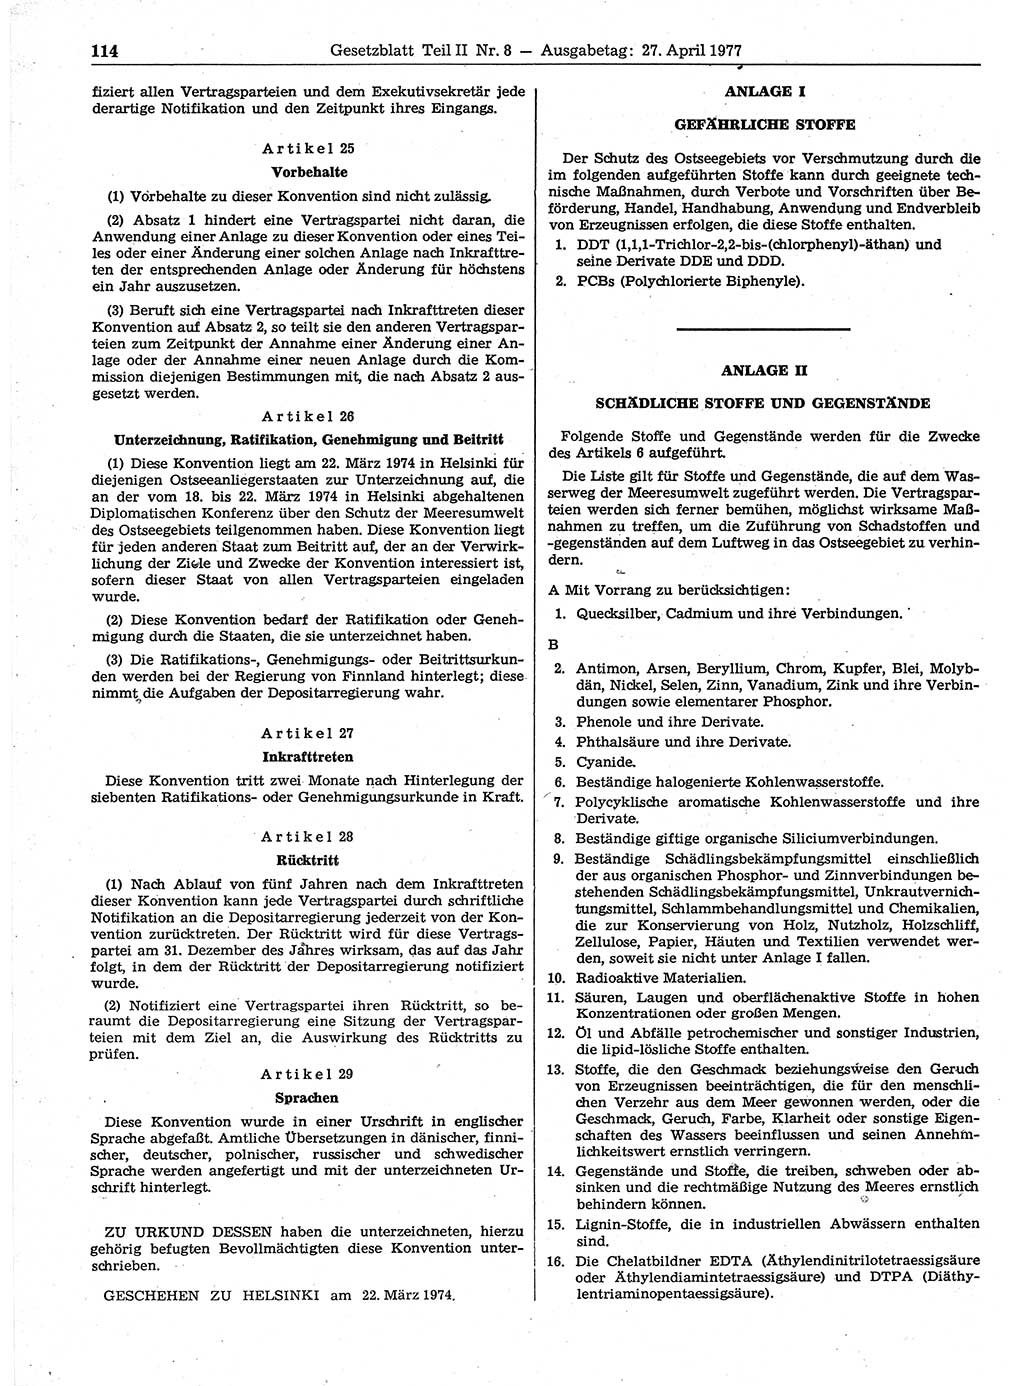 Gesetzblatt (GBl.) der Deutschen Demokratischen Republik (DDR) Teil ⅠⅠ 1977, Seite 114 (GBl. DDR ⅠⅠ 1977, S. 114)